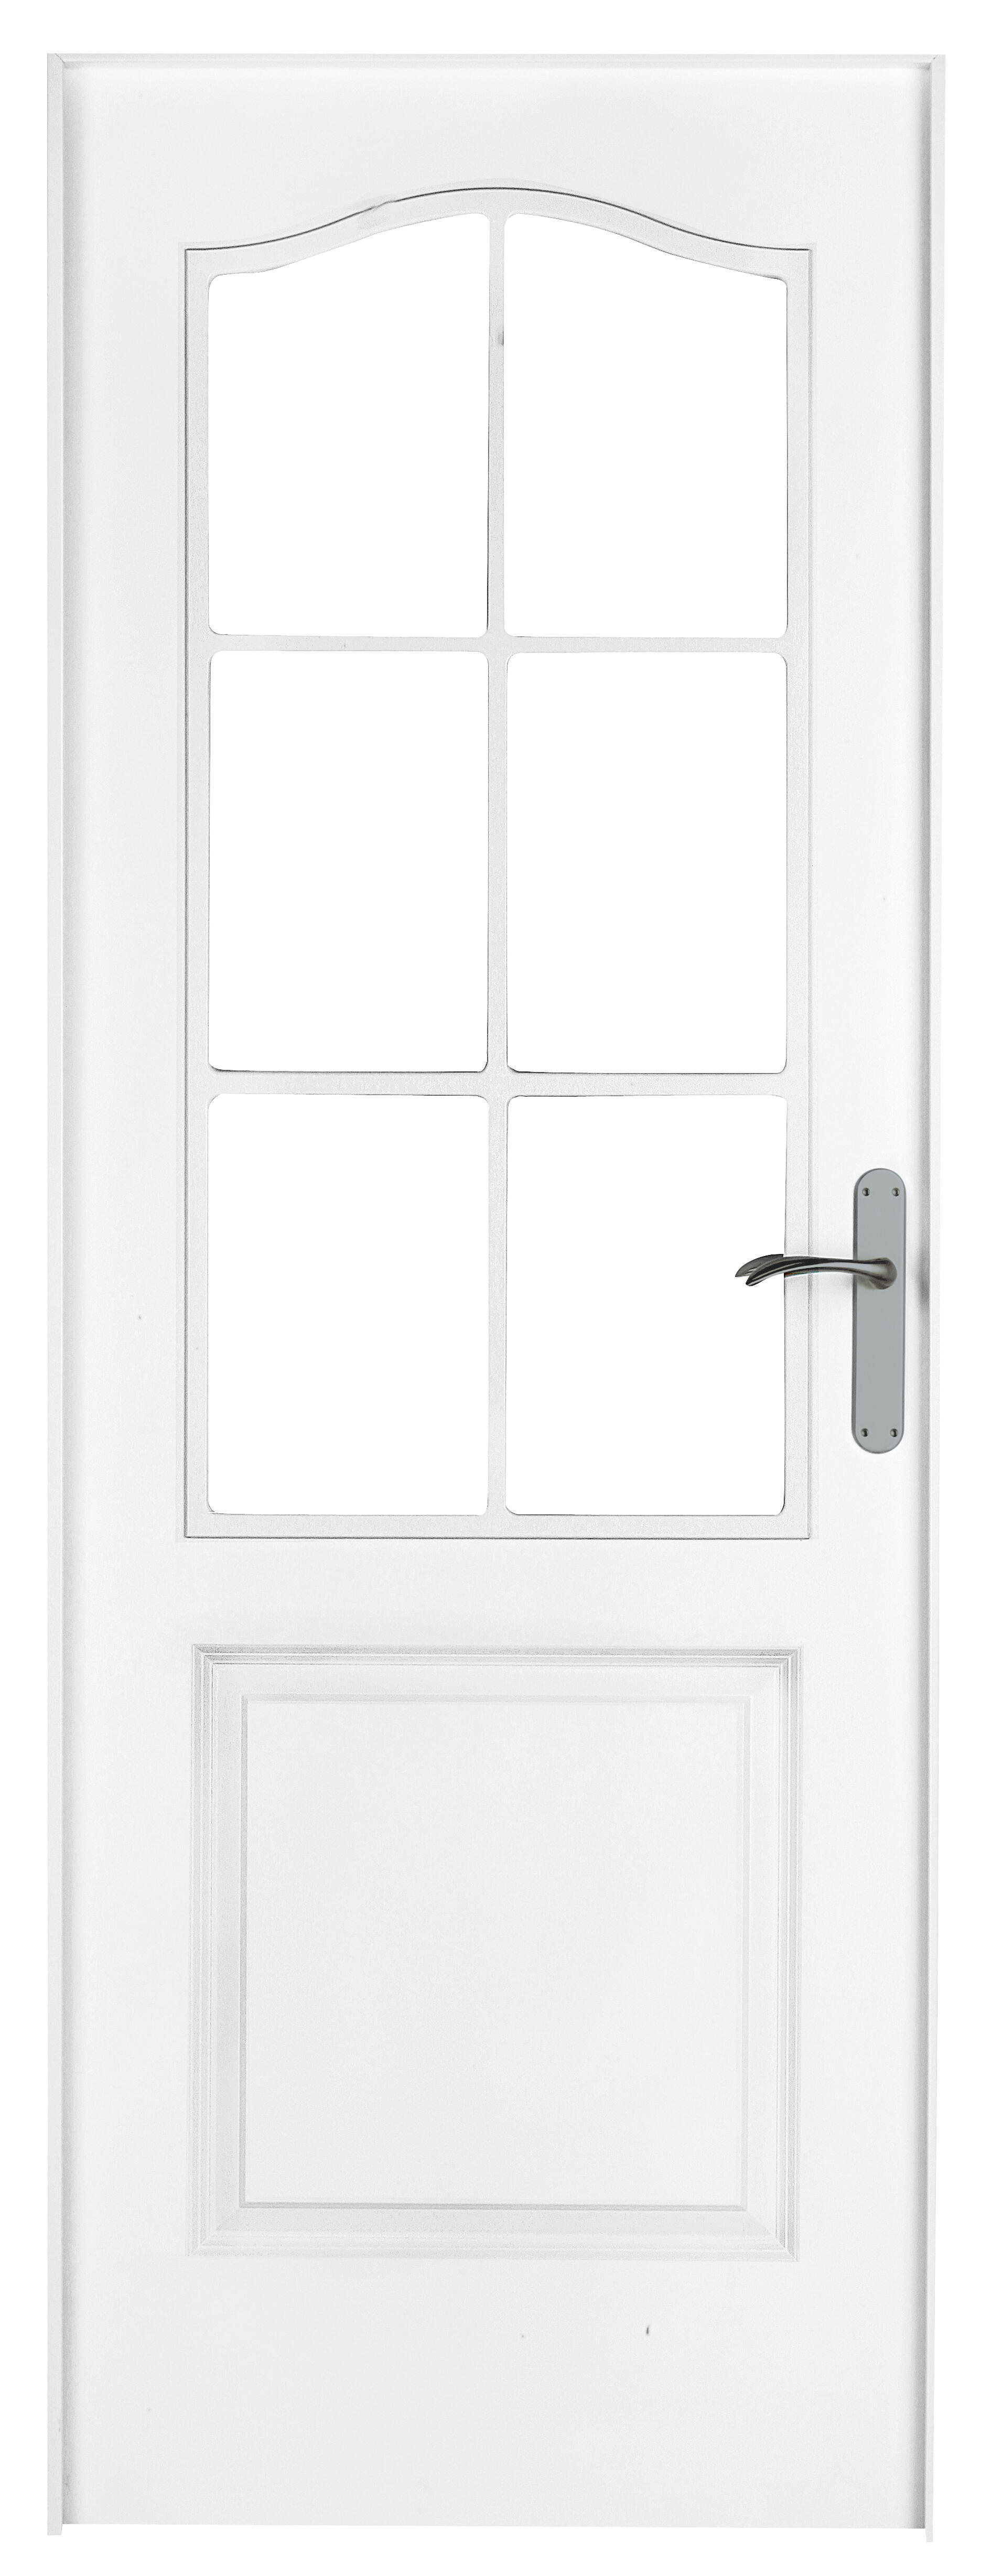 Puerta abatible bonn blanca aero blanco izquierda con cristal de 110x30 y 72.5cm